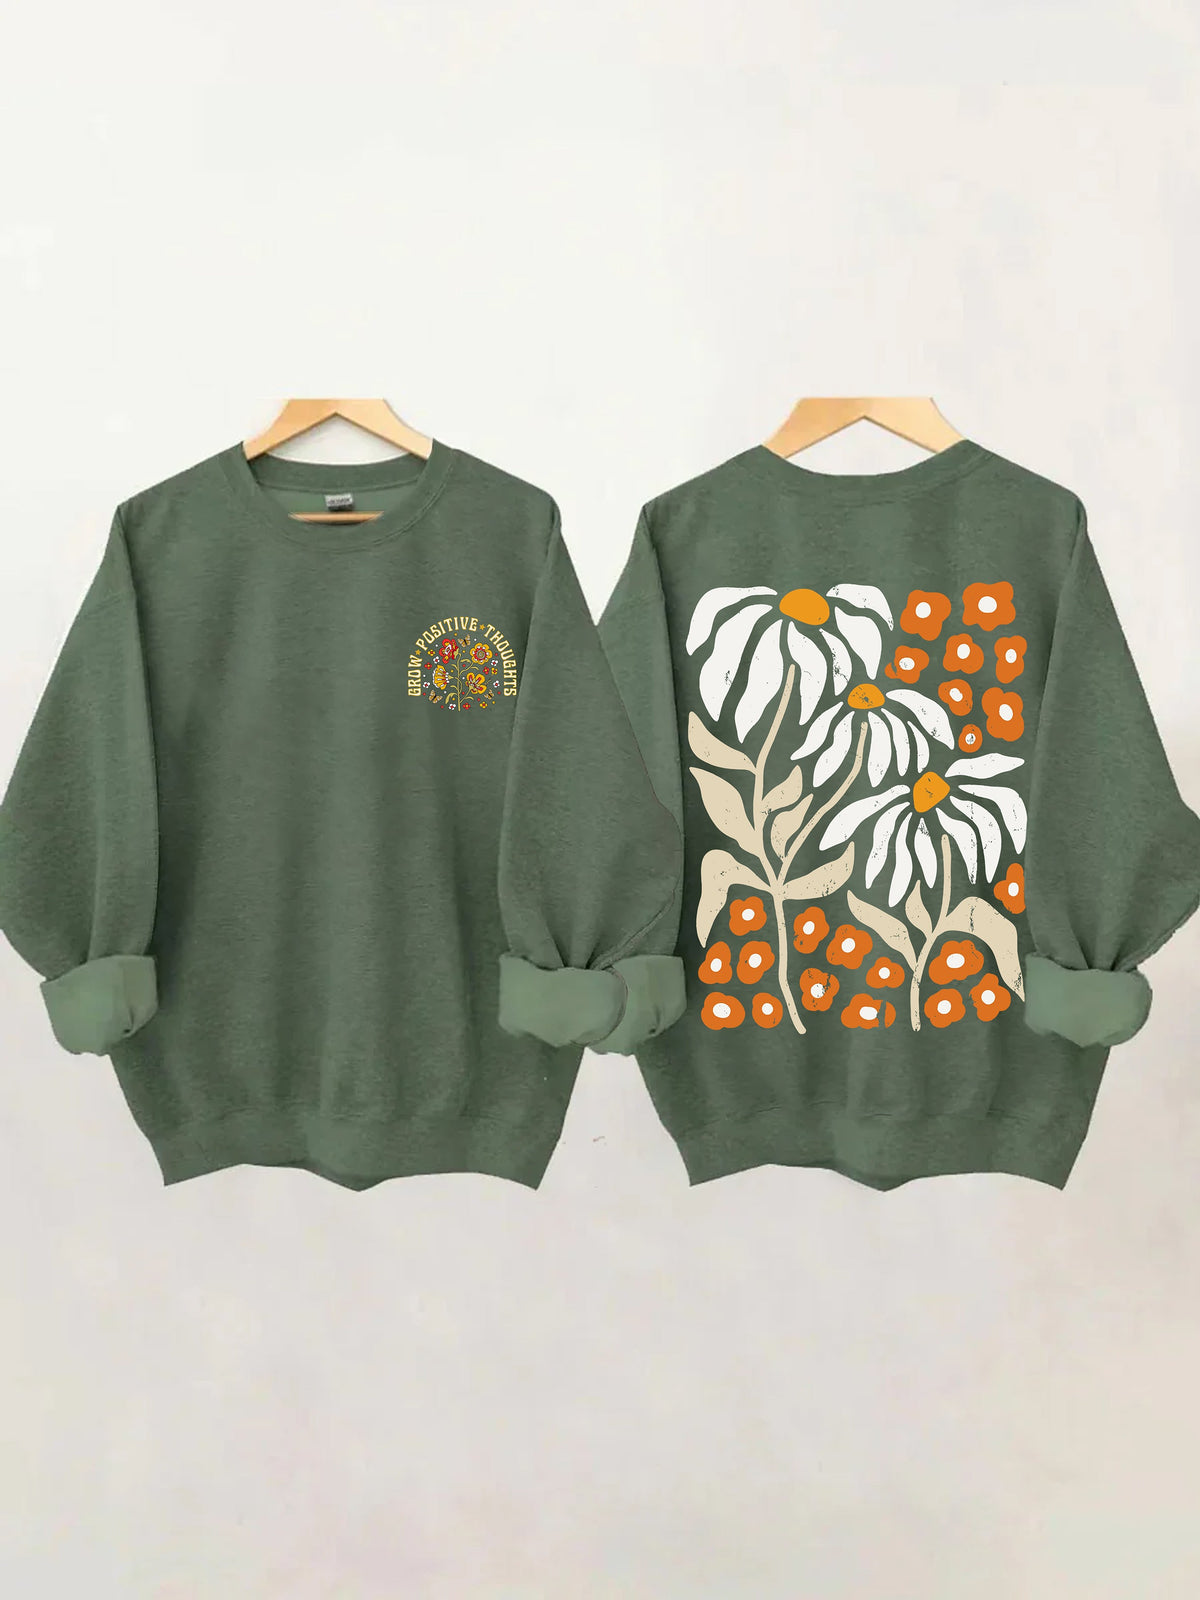 Cultiver des pensées positives Vintage Wildflowers Sweatshirt